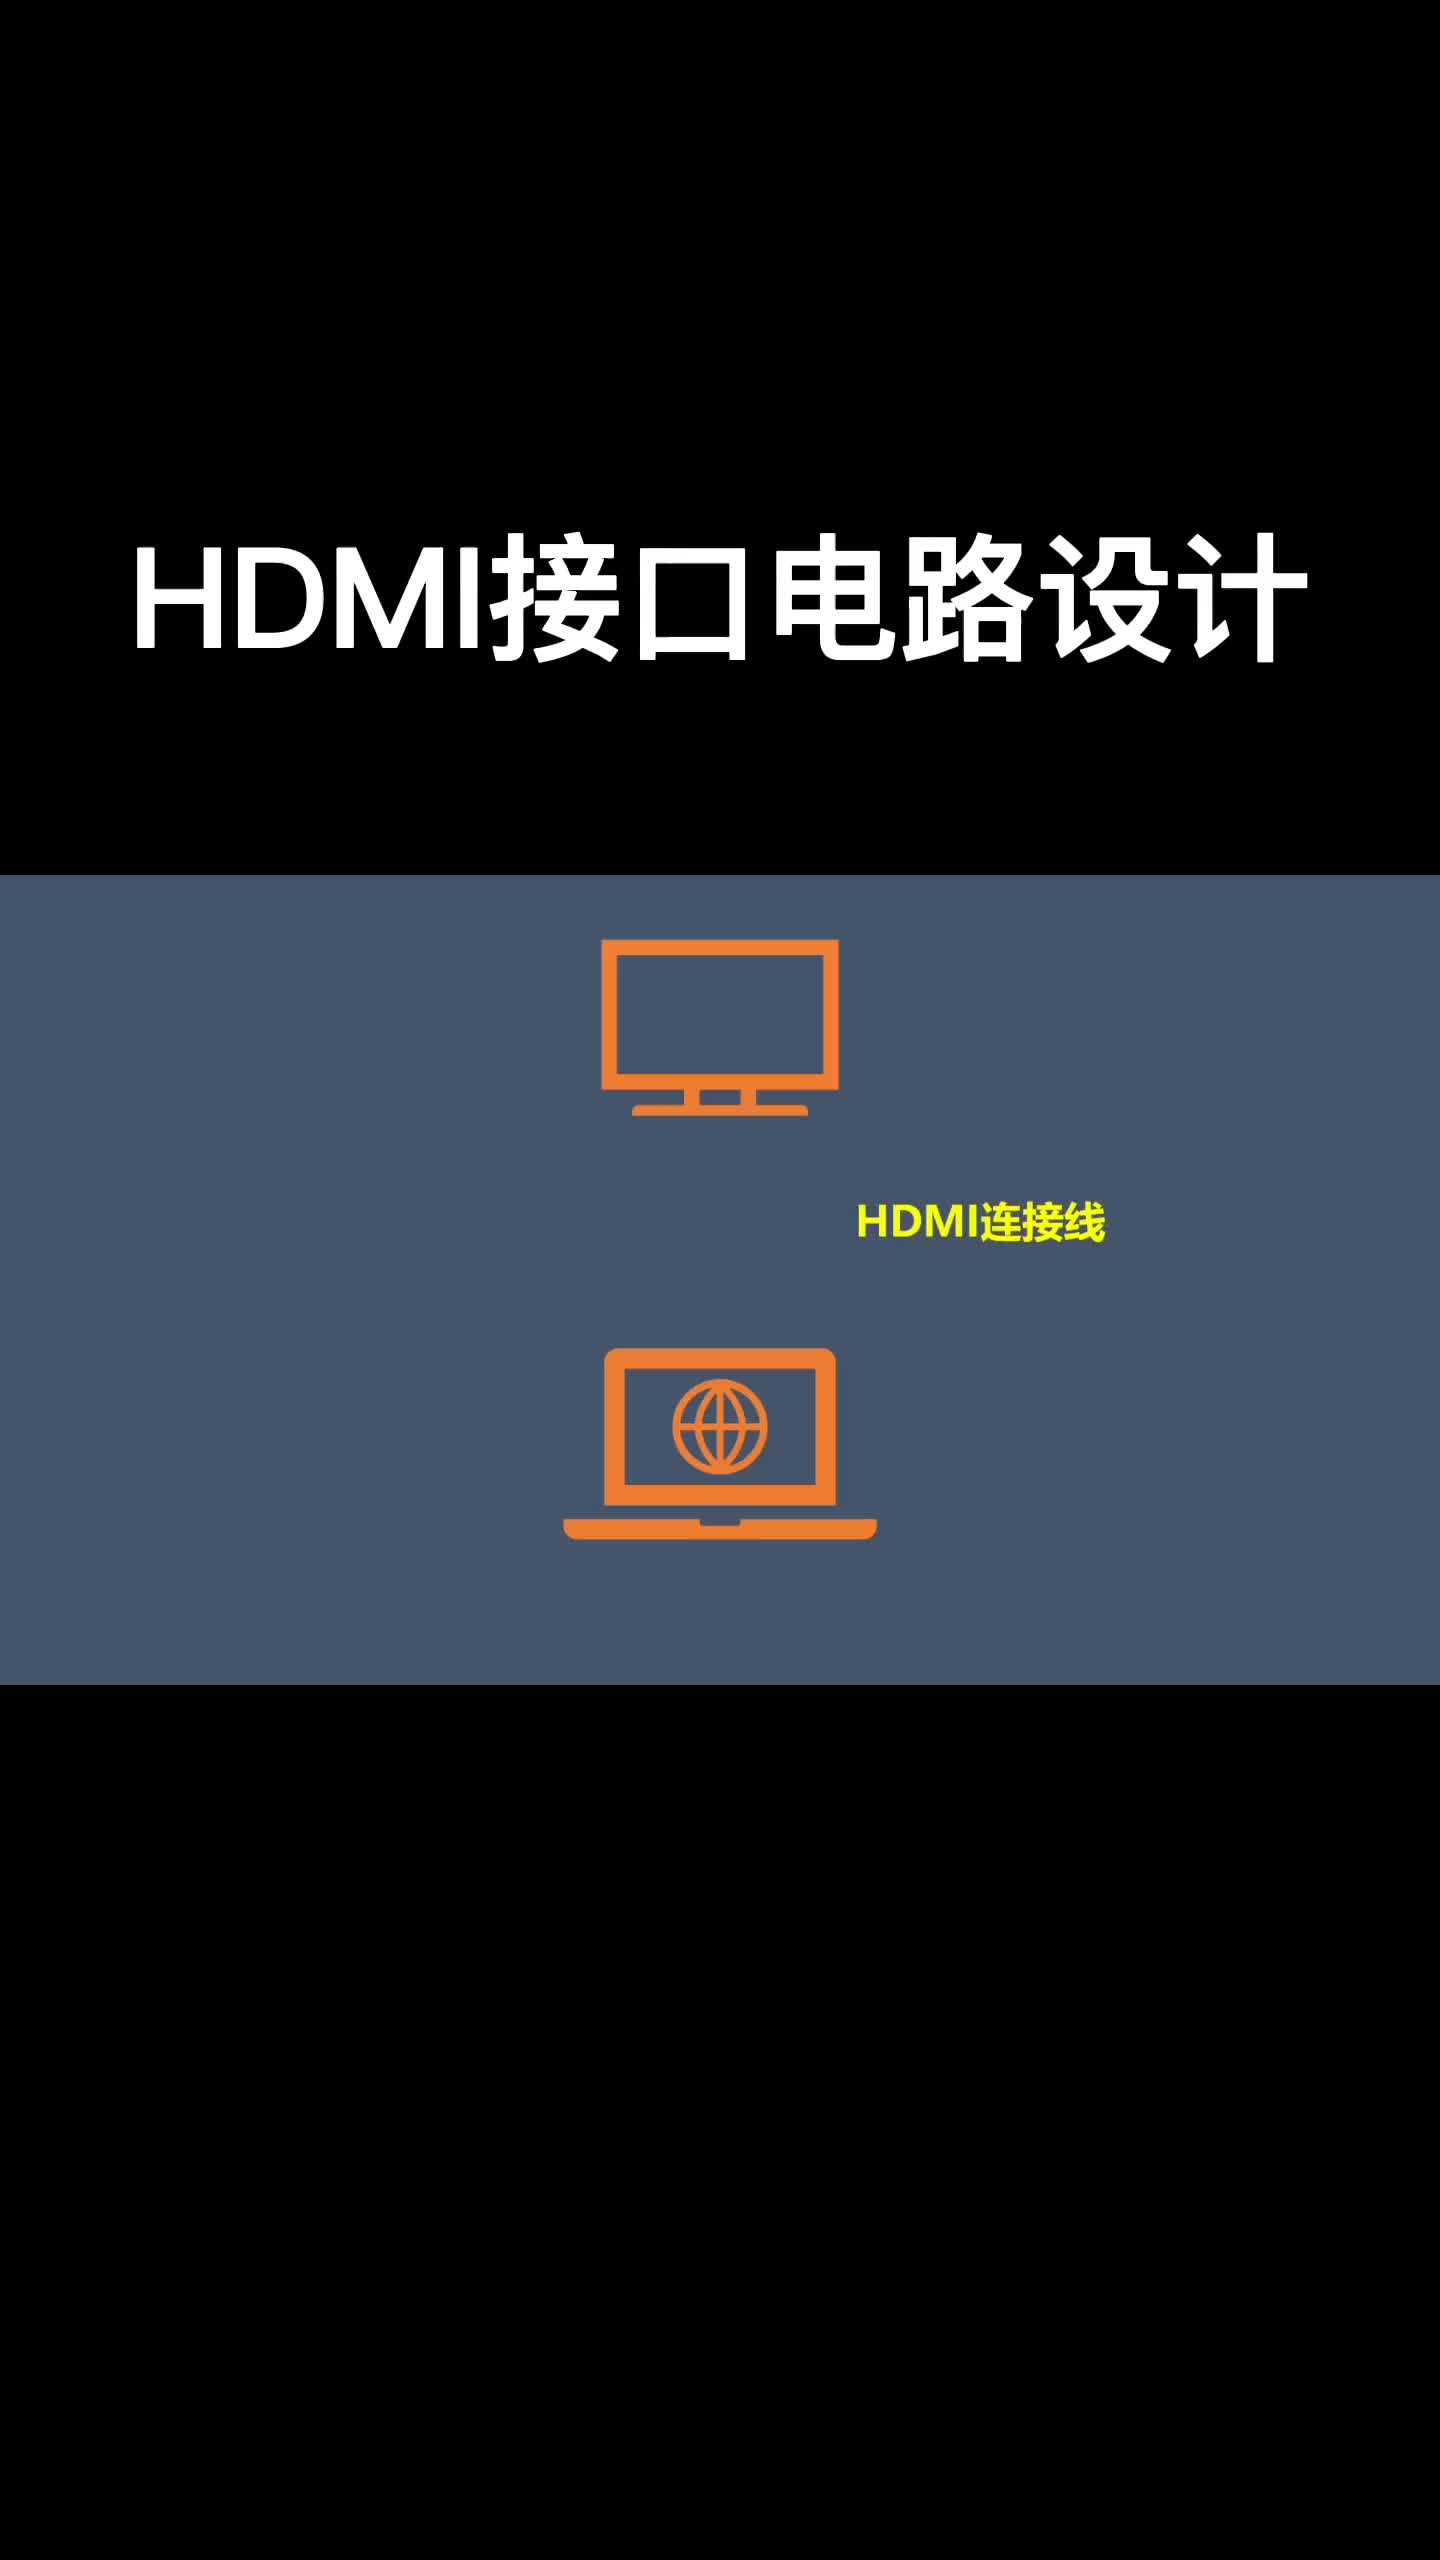 HDMI接口電路設計#跟著UP主一起創作吧 